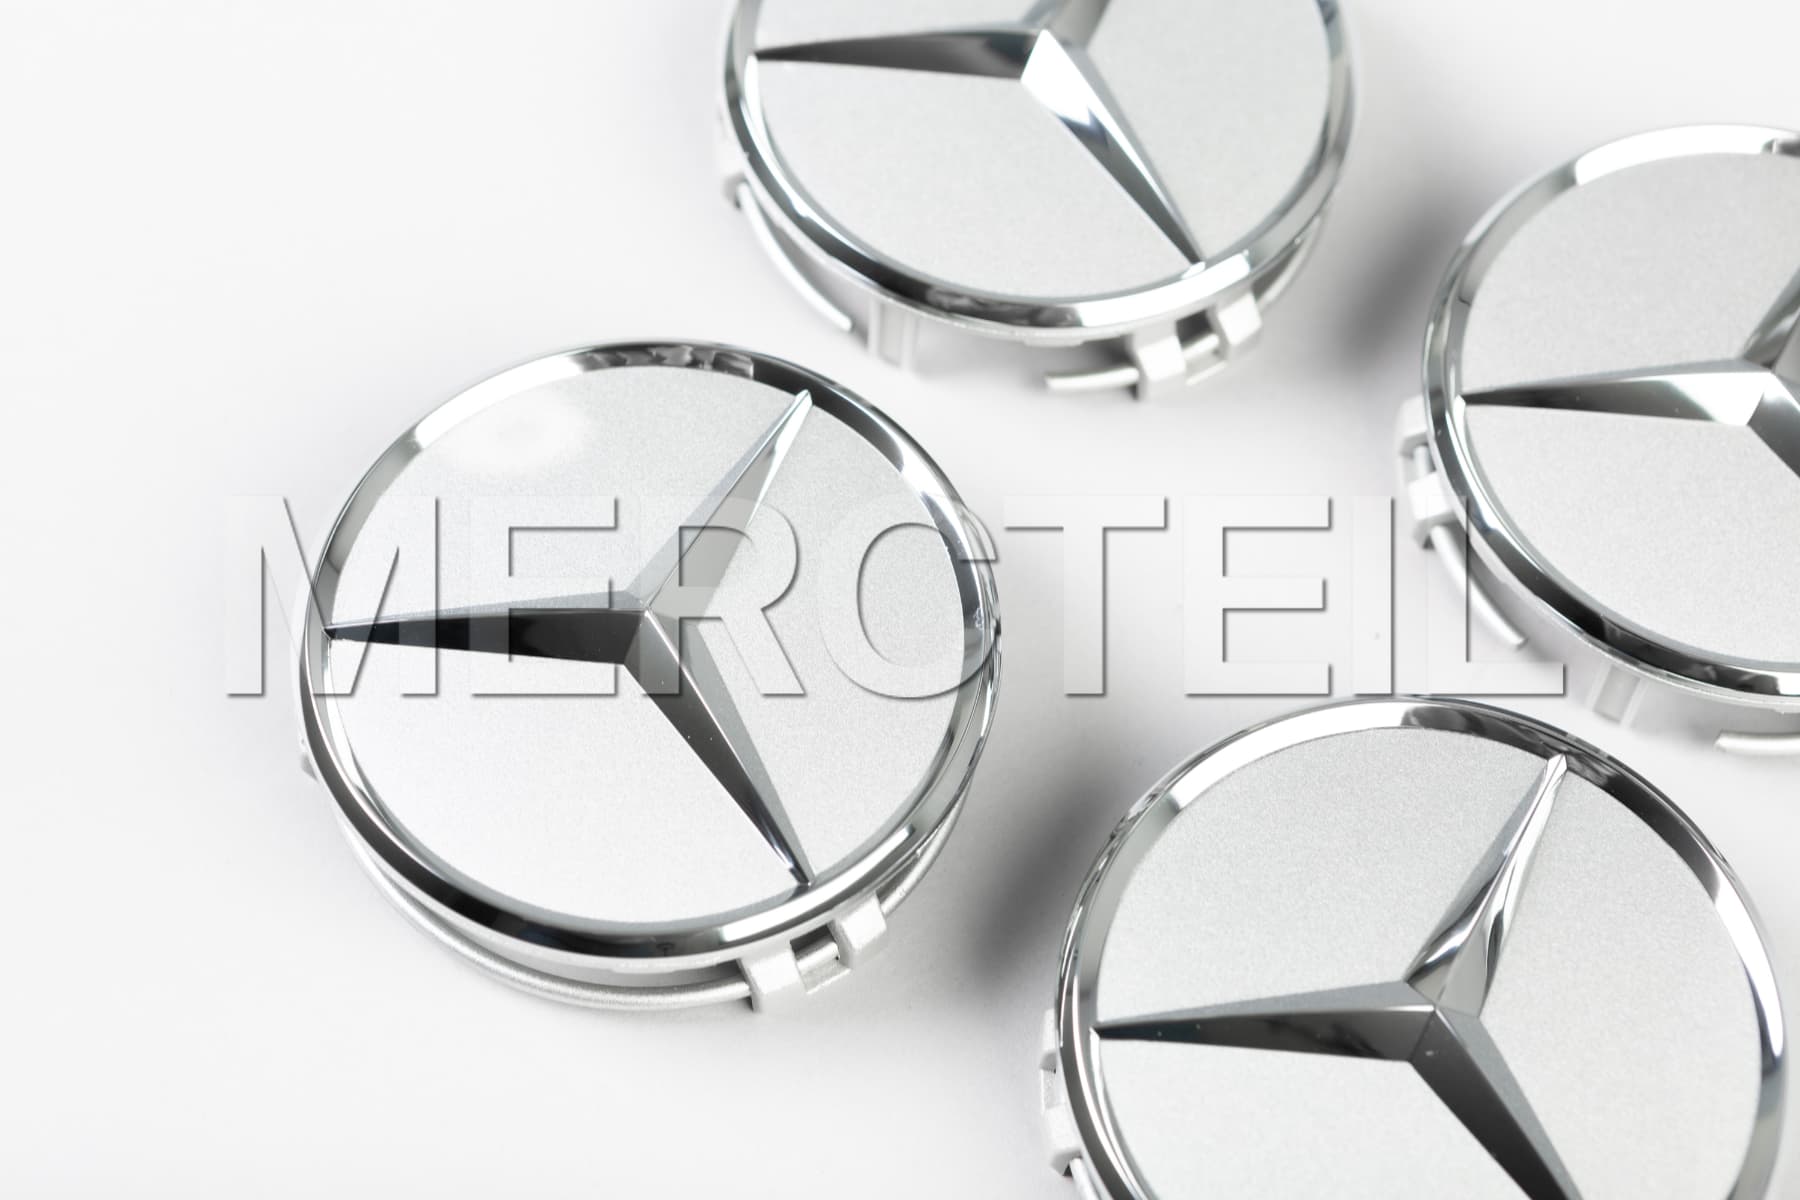 Genuine Mercedes Benz Chromed Raised Star Wheel Center Cap Single NEW 66470207 